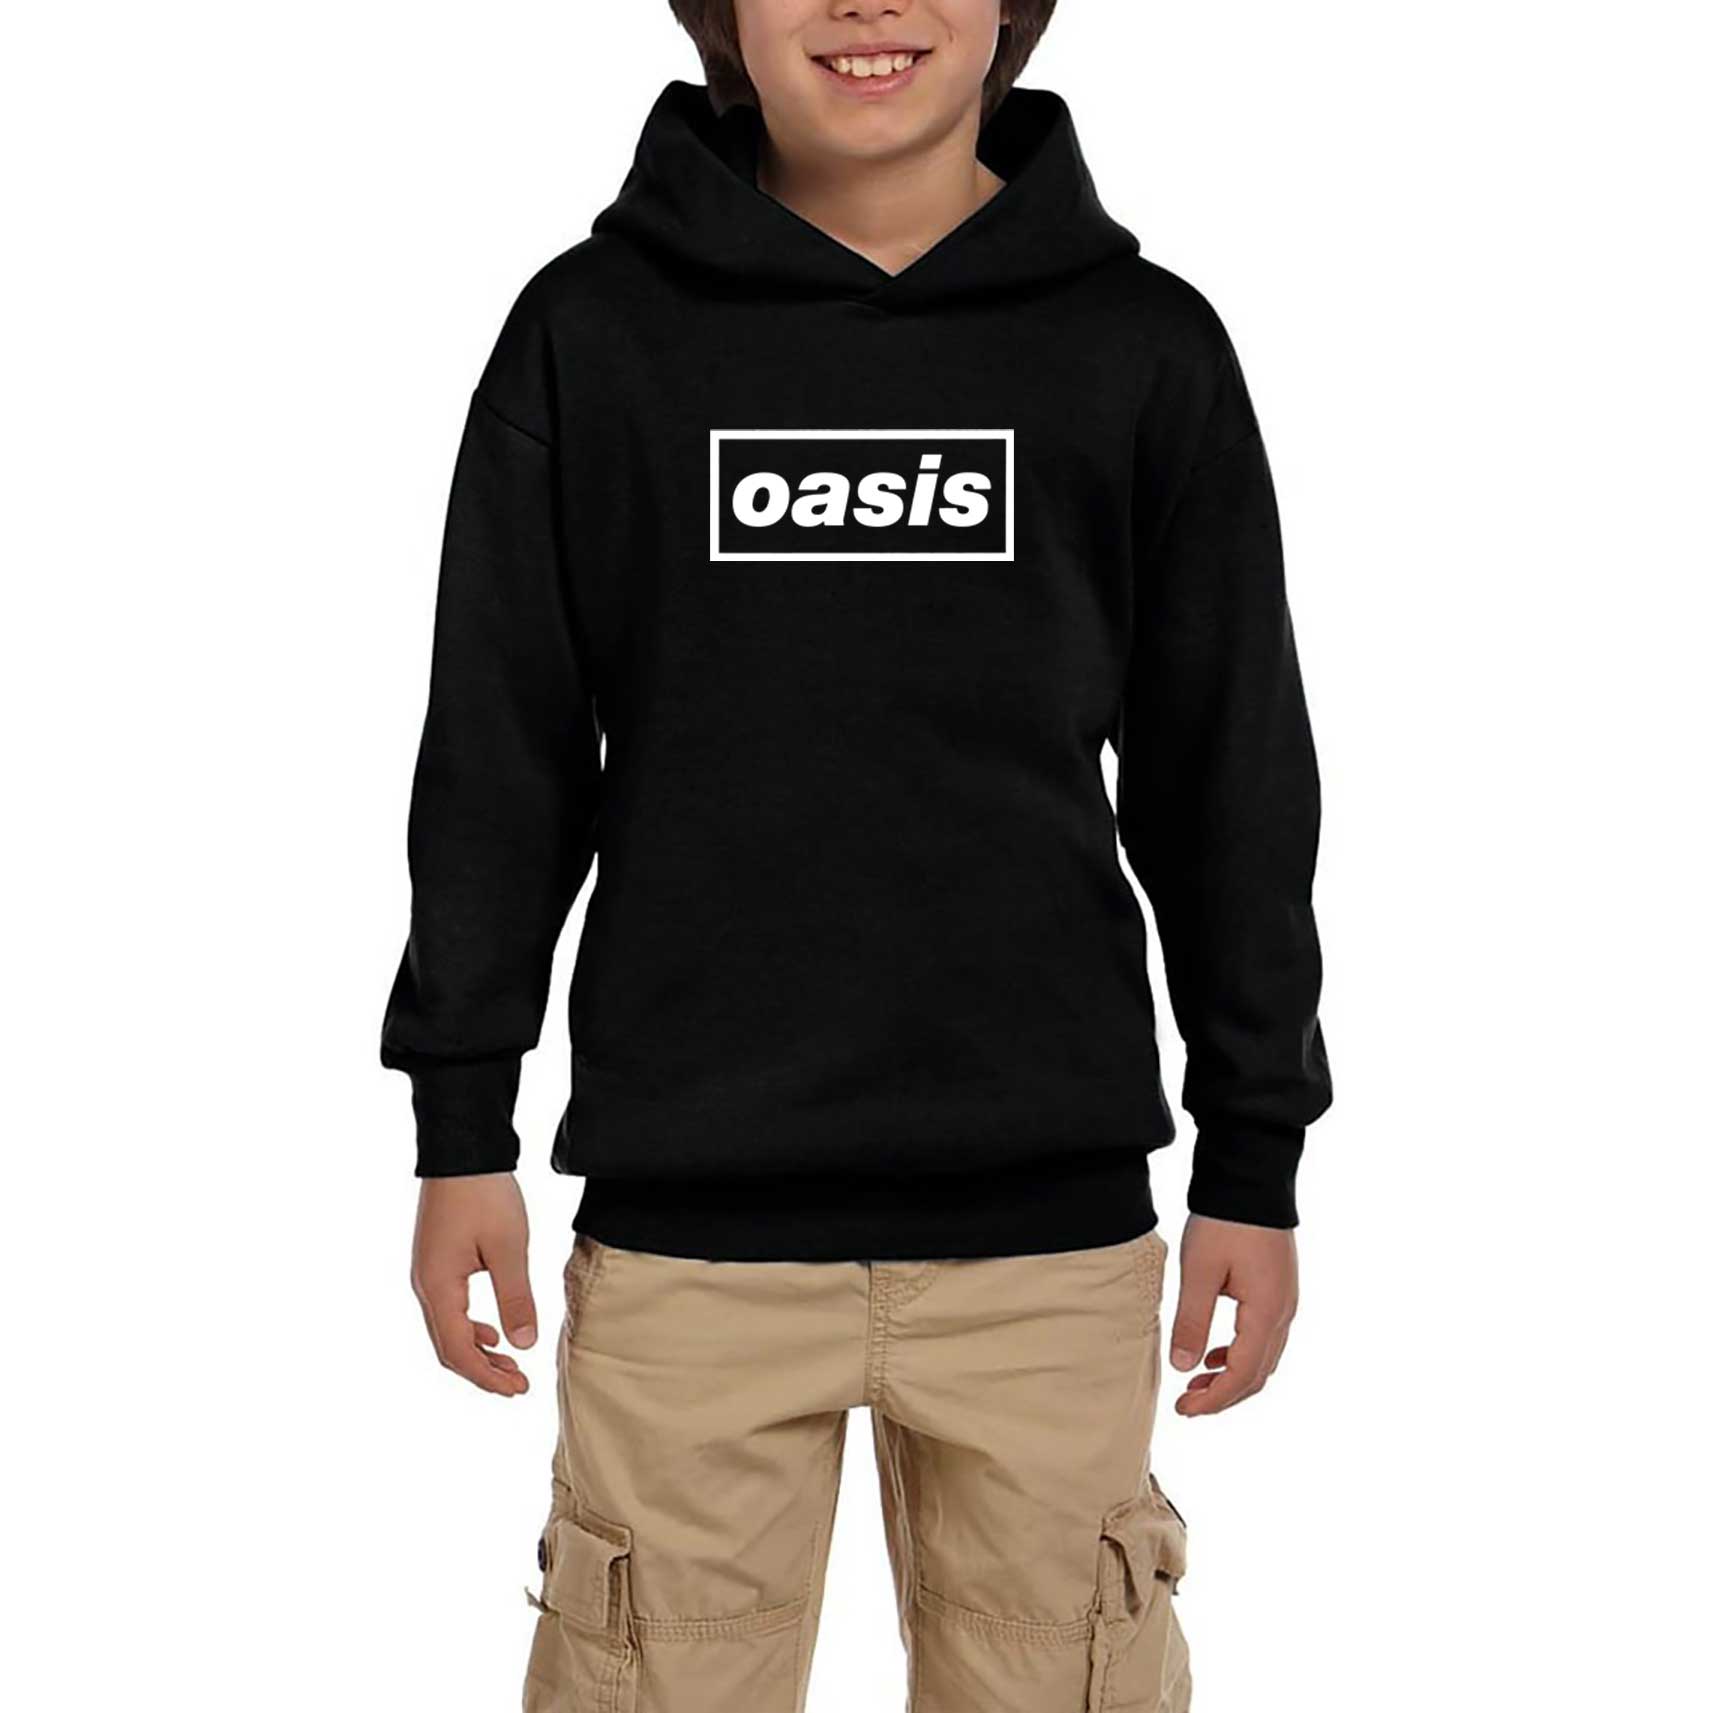 Oasis Text Siyah Çocuk Kapşonlu Sweatshirt